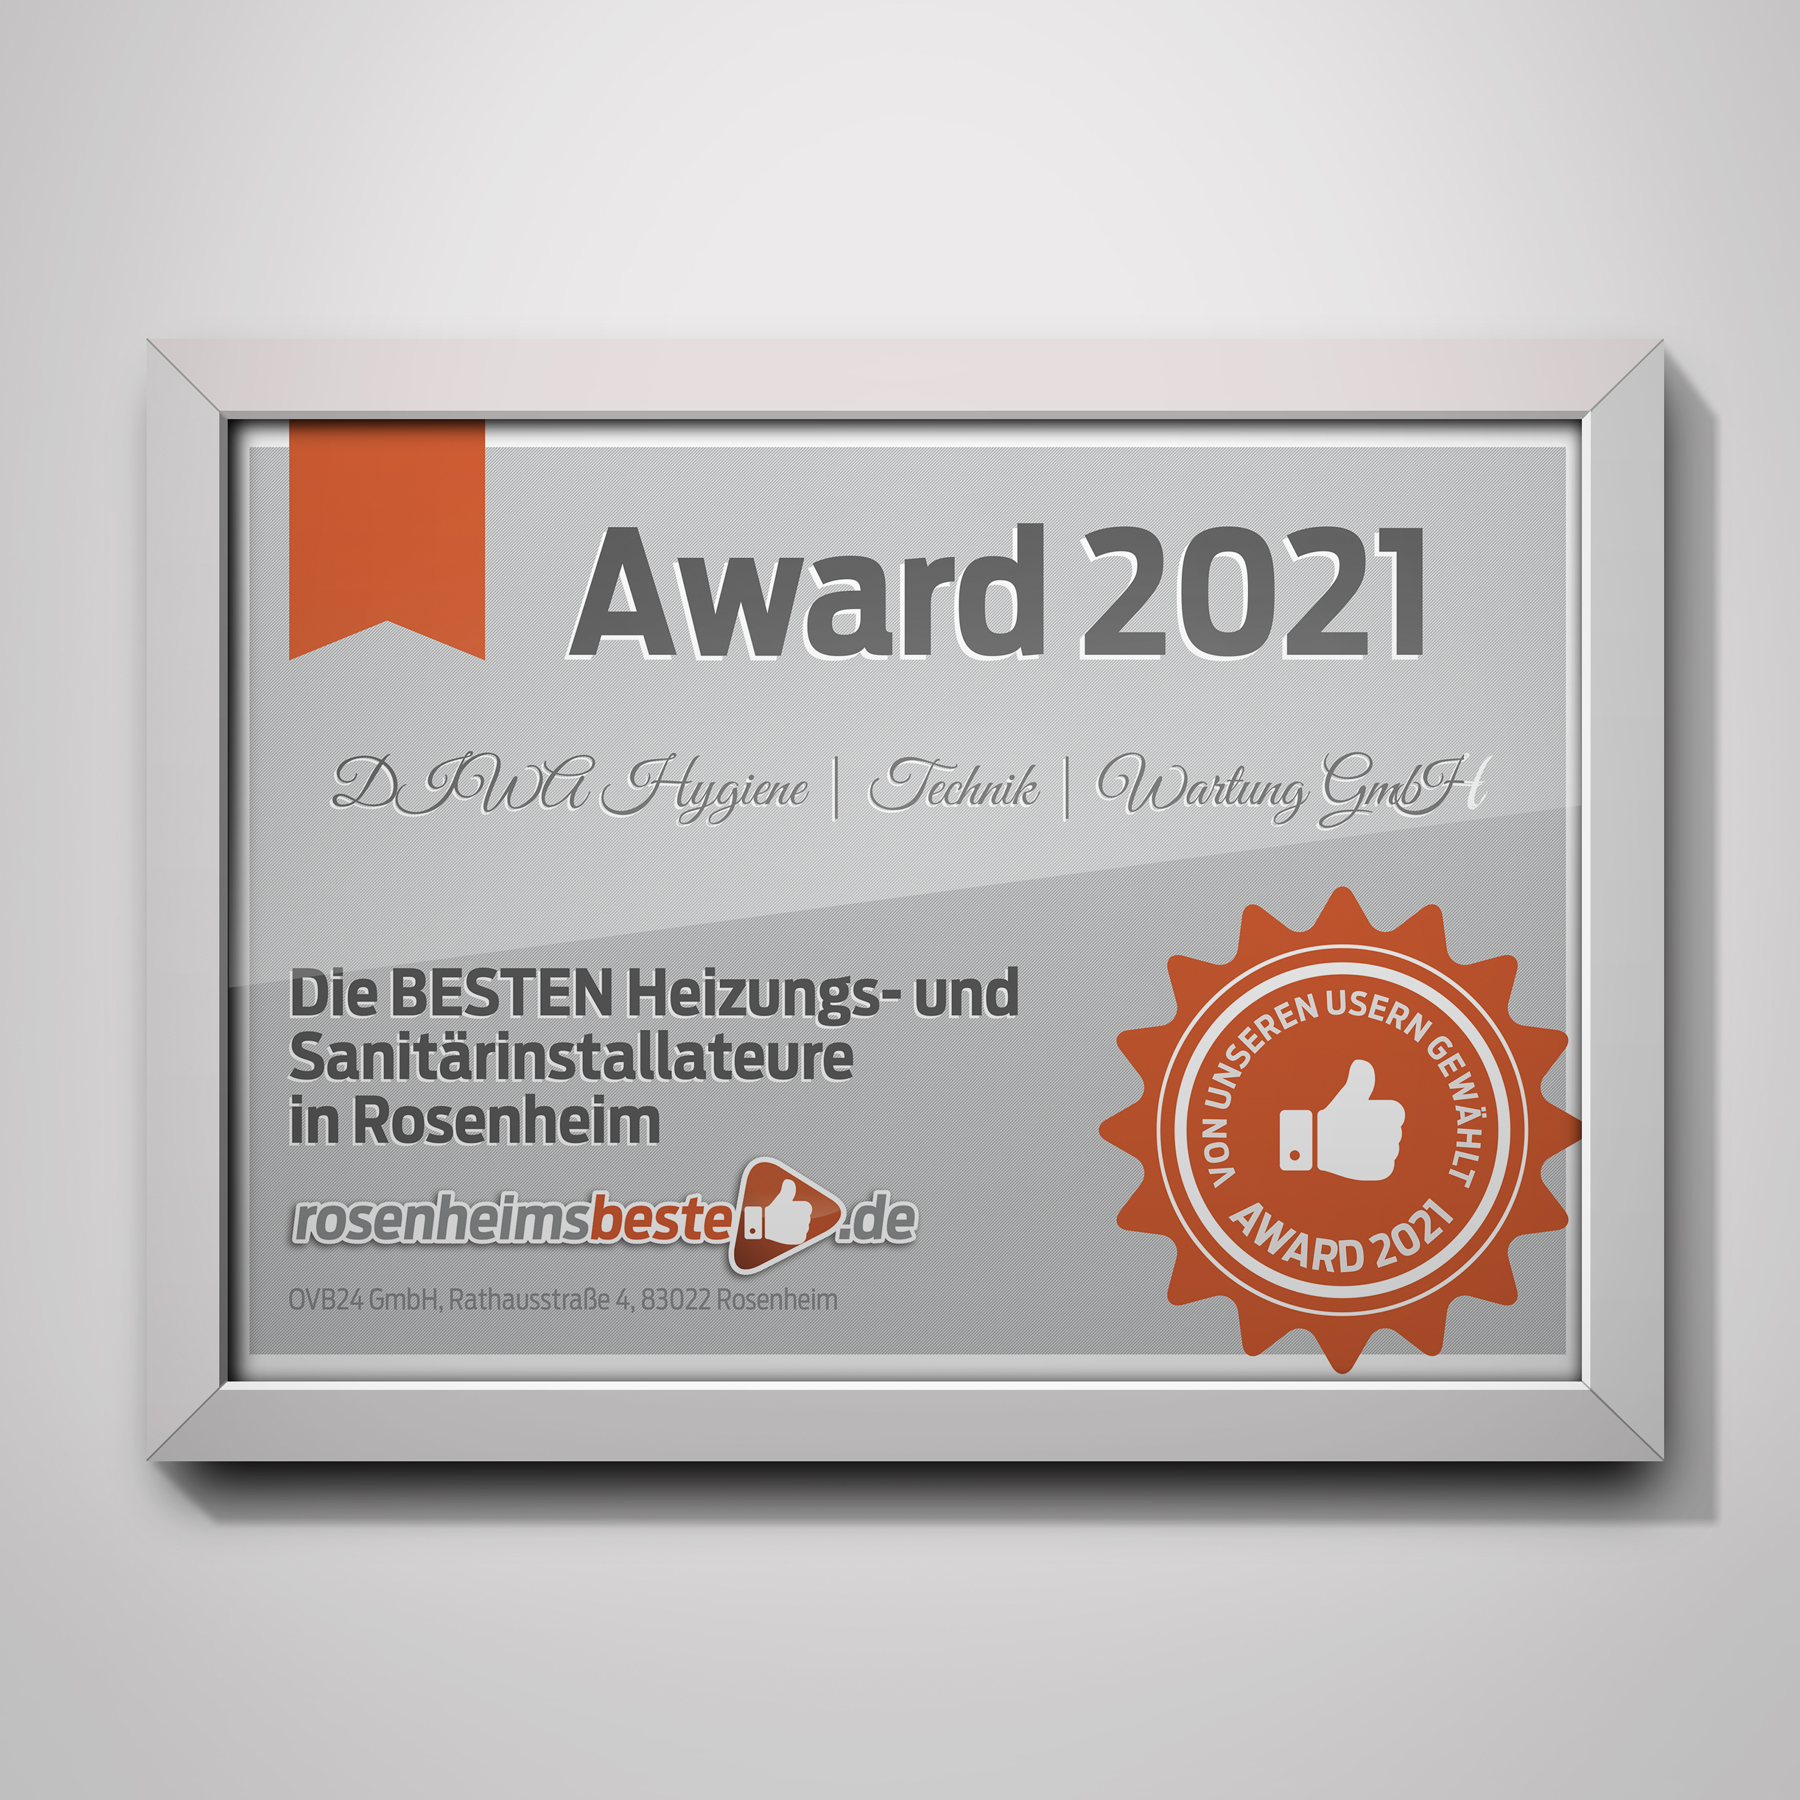 Rosenheims Beste Award 2021